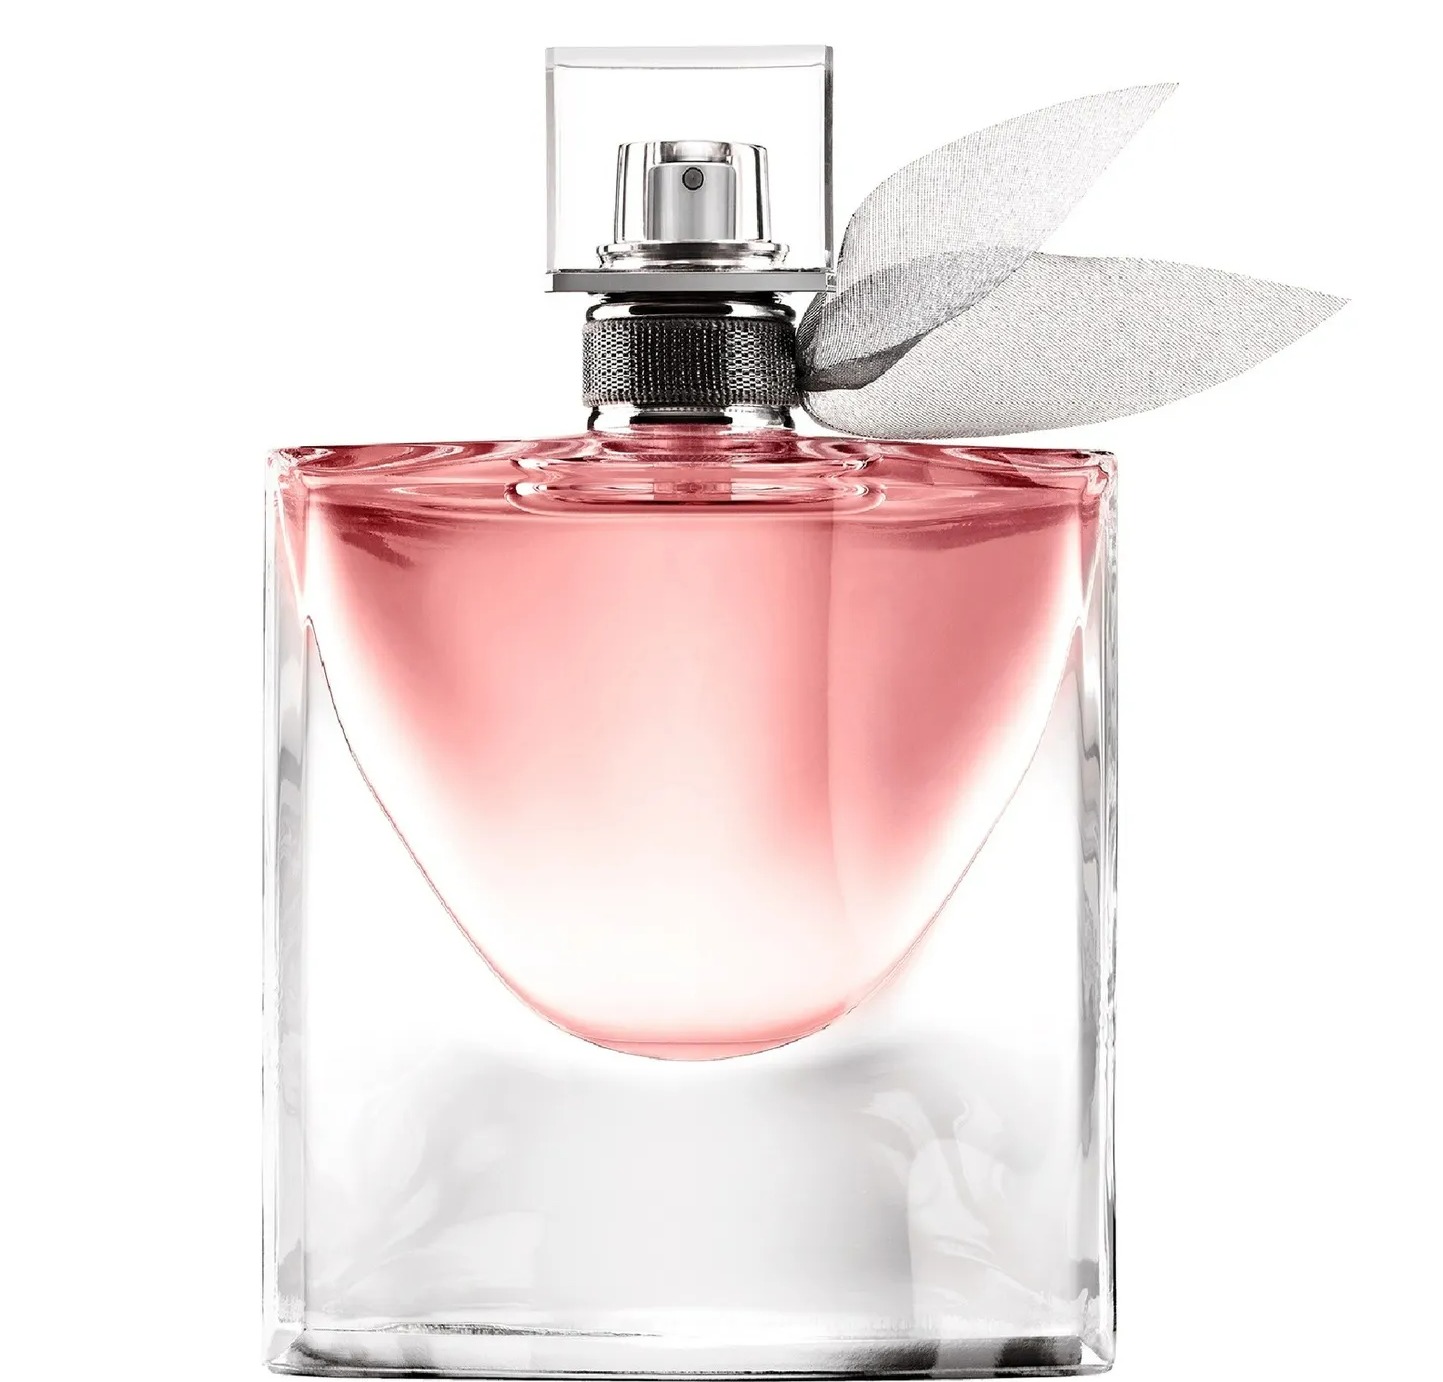 Käufer sagen, dass das Körperspray eine Kopie des 92 £ teuren Parfüms „La Vie Est Belle“ von Lancôme sei